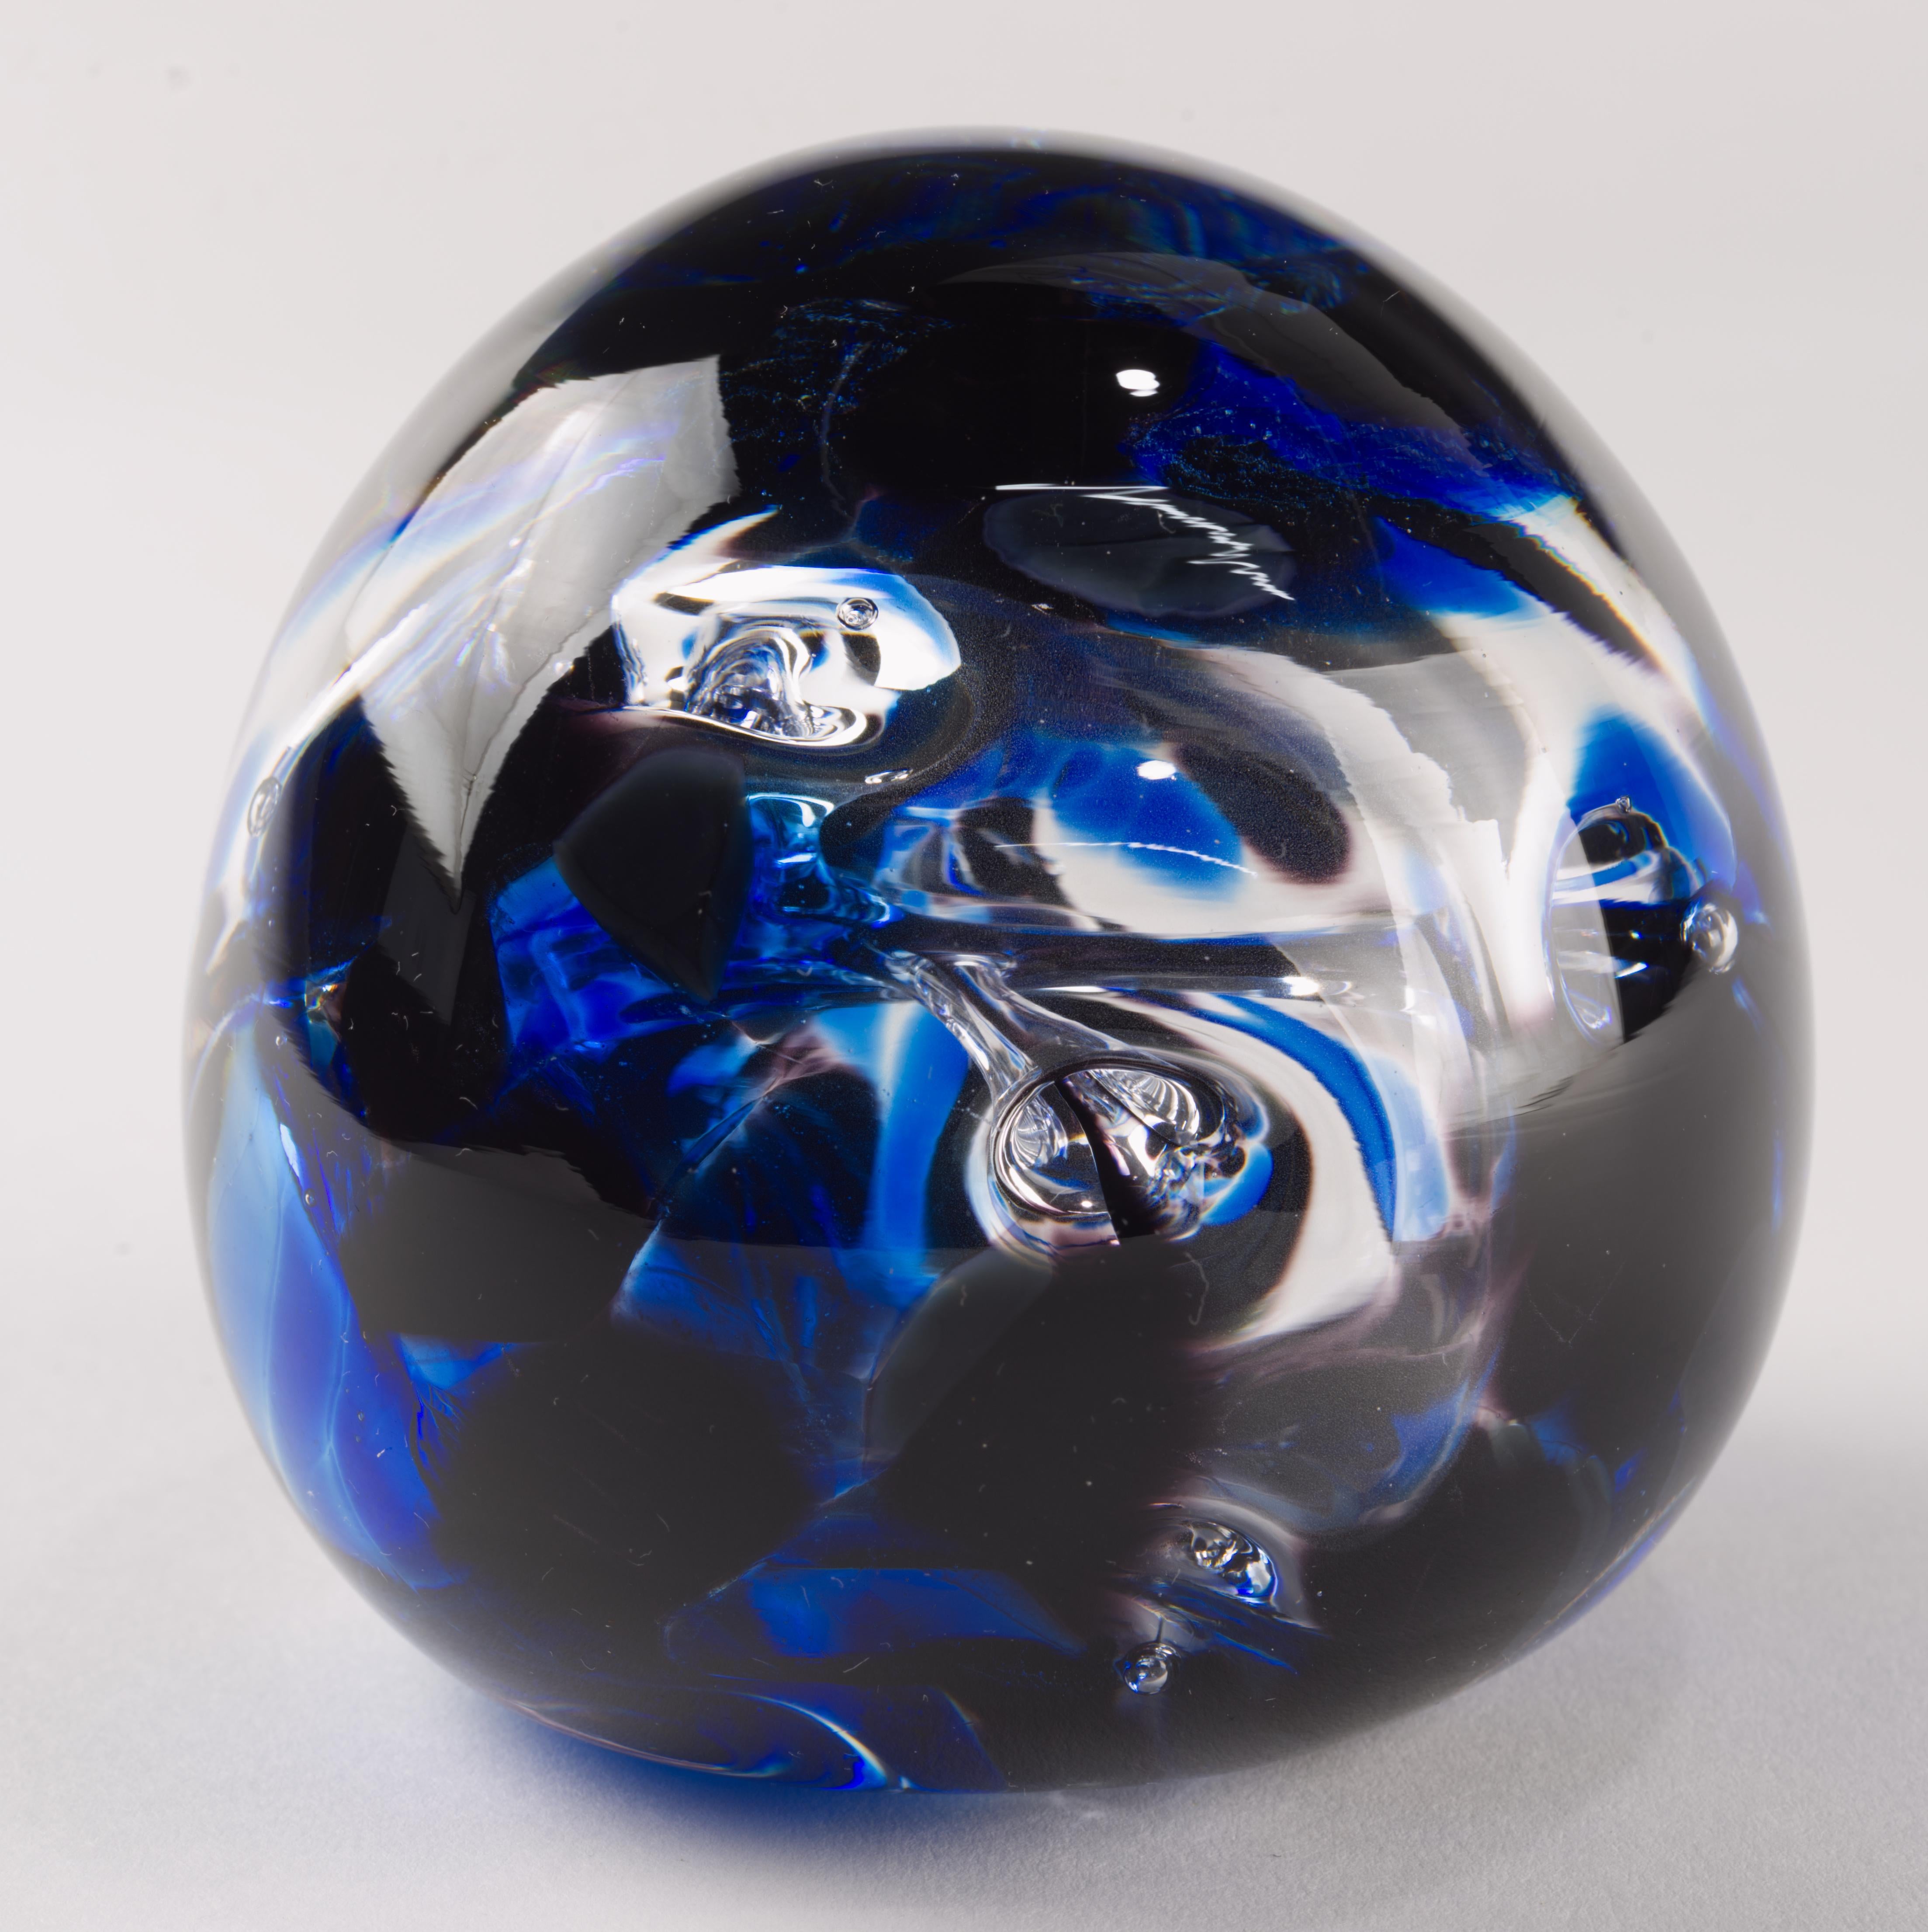  Grand presse-papier en verre d'art moderne de studio, bleu cobalt et transparent, avec des bulles contrôlées formant un élément abstrait de forme biomorphique. La pièce est faite à la main et signée par l'artiste sur le fond. 

Le presse-papier a